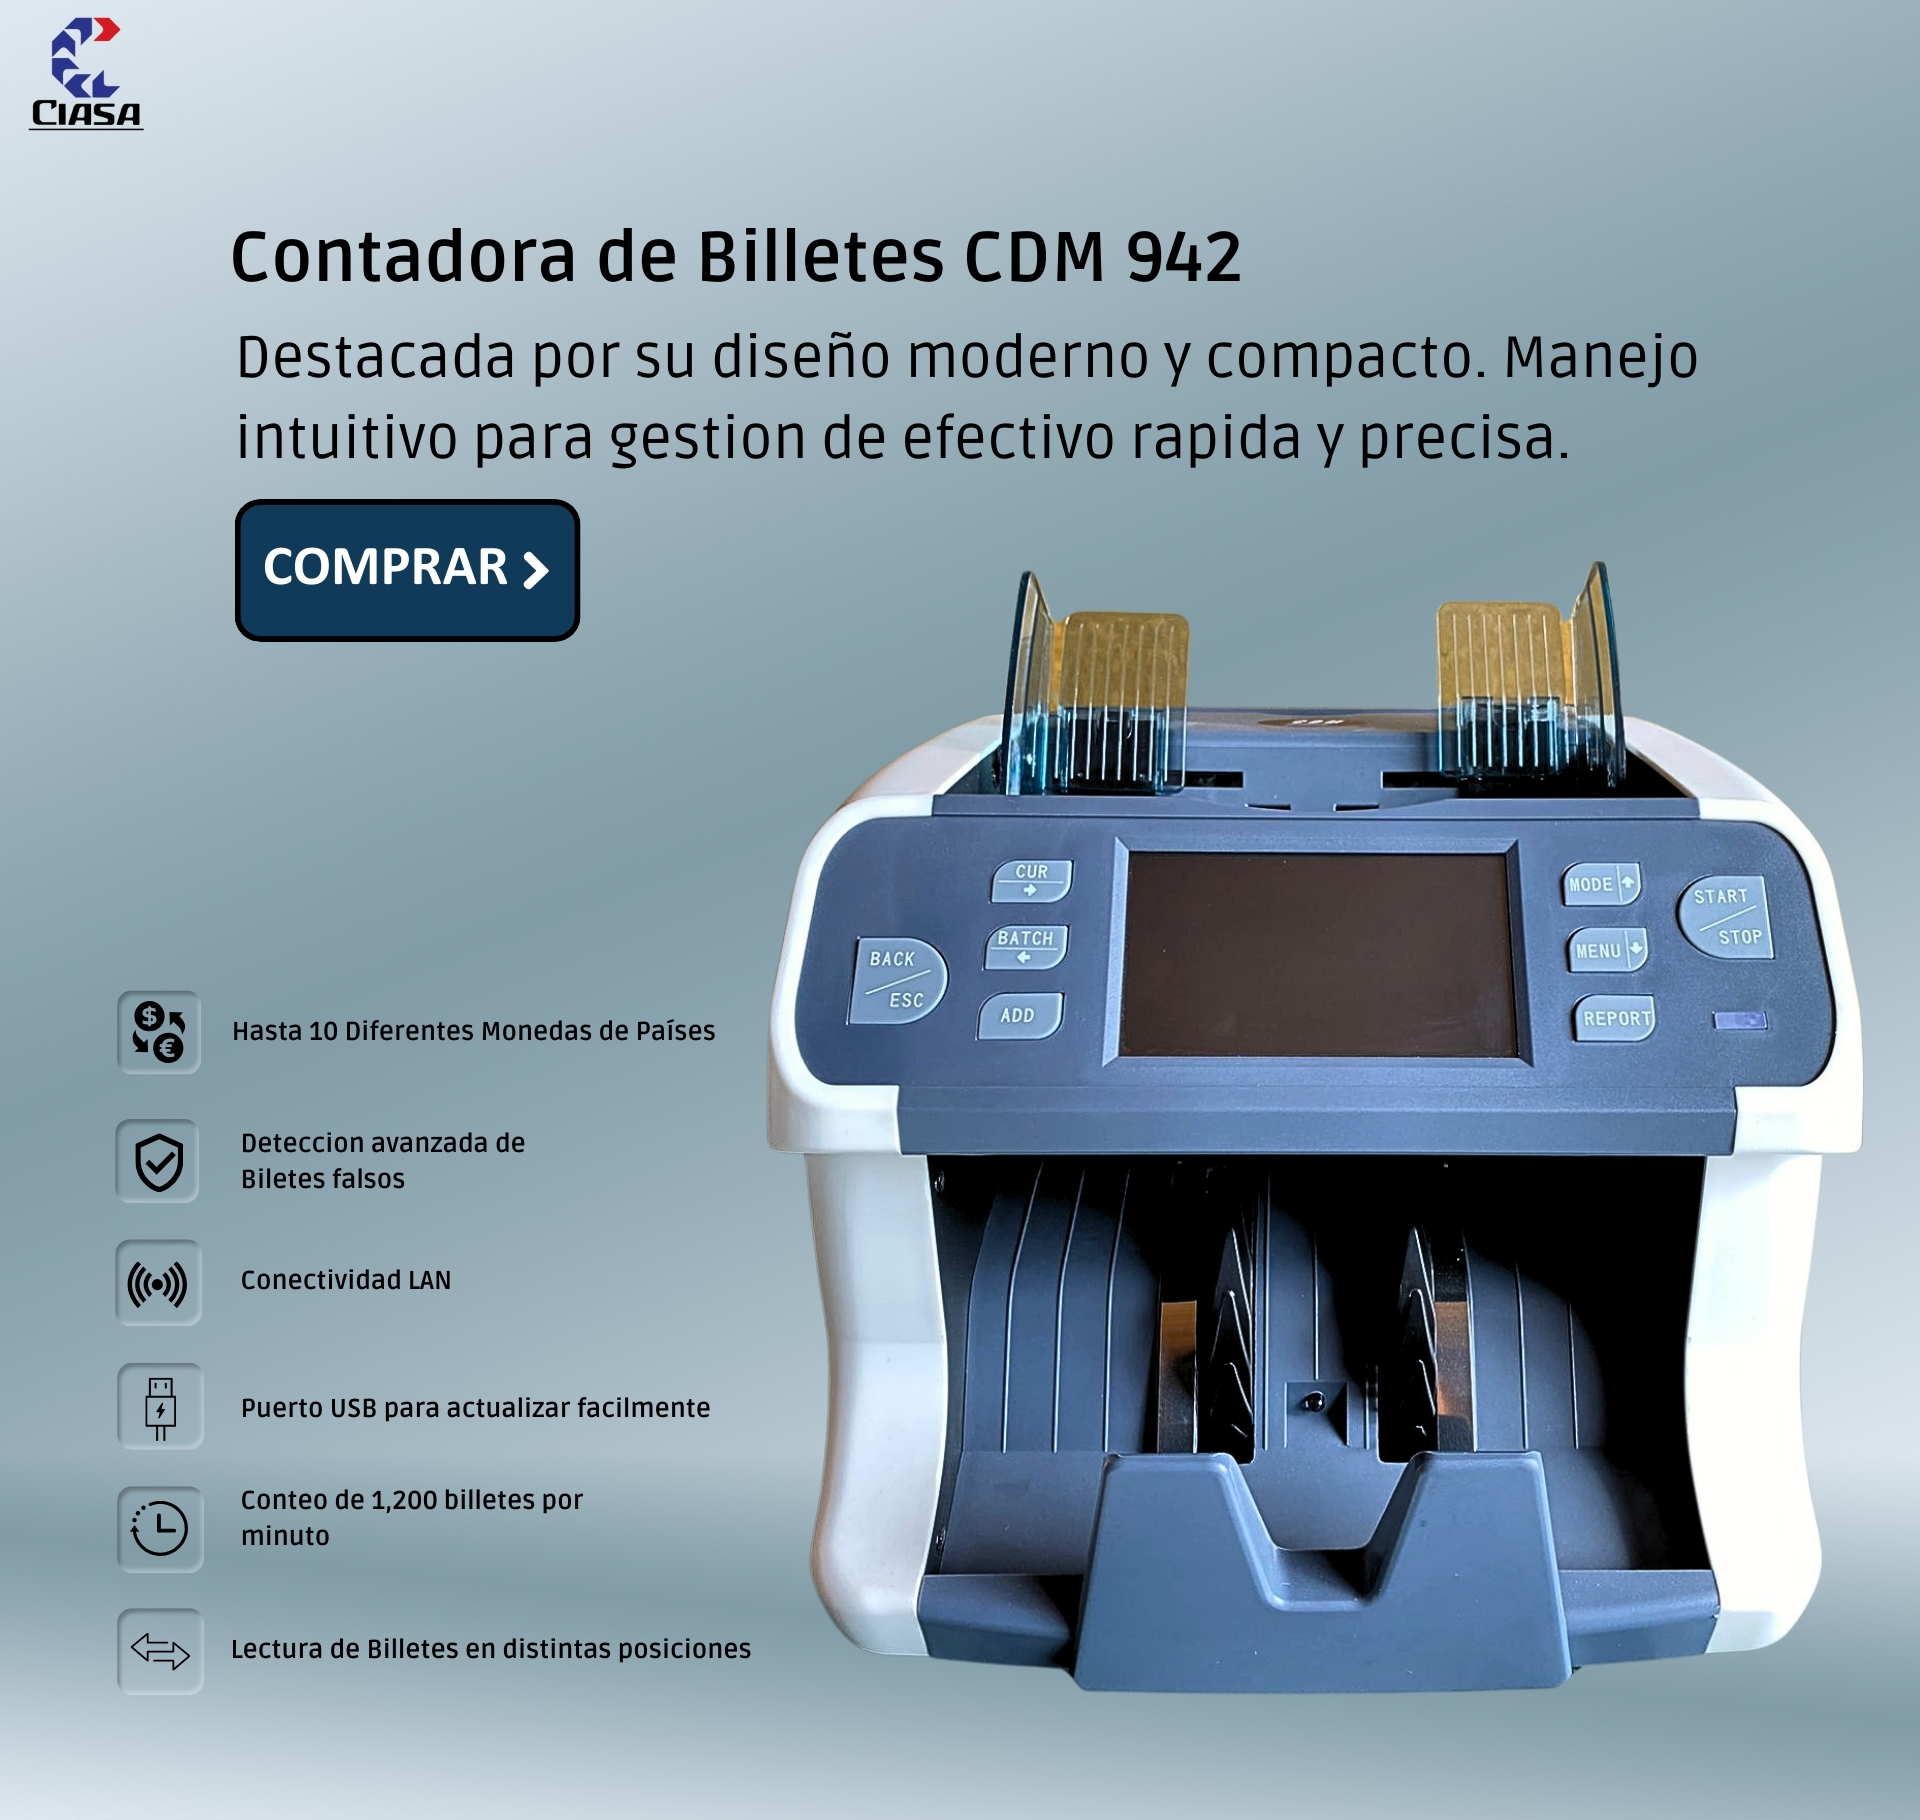 Detector de Billetes Falsos / Modelo LD40 CIASA MEXICO LD40